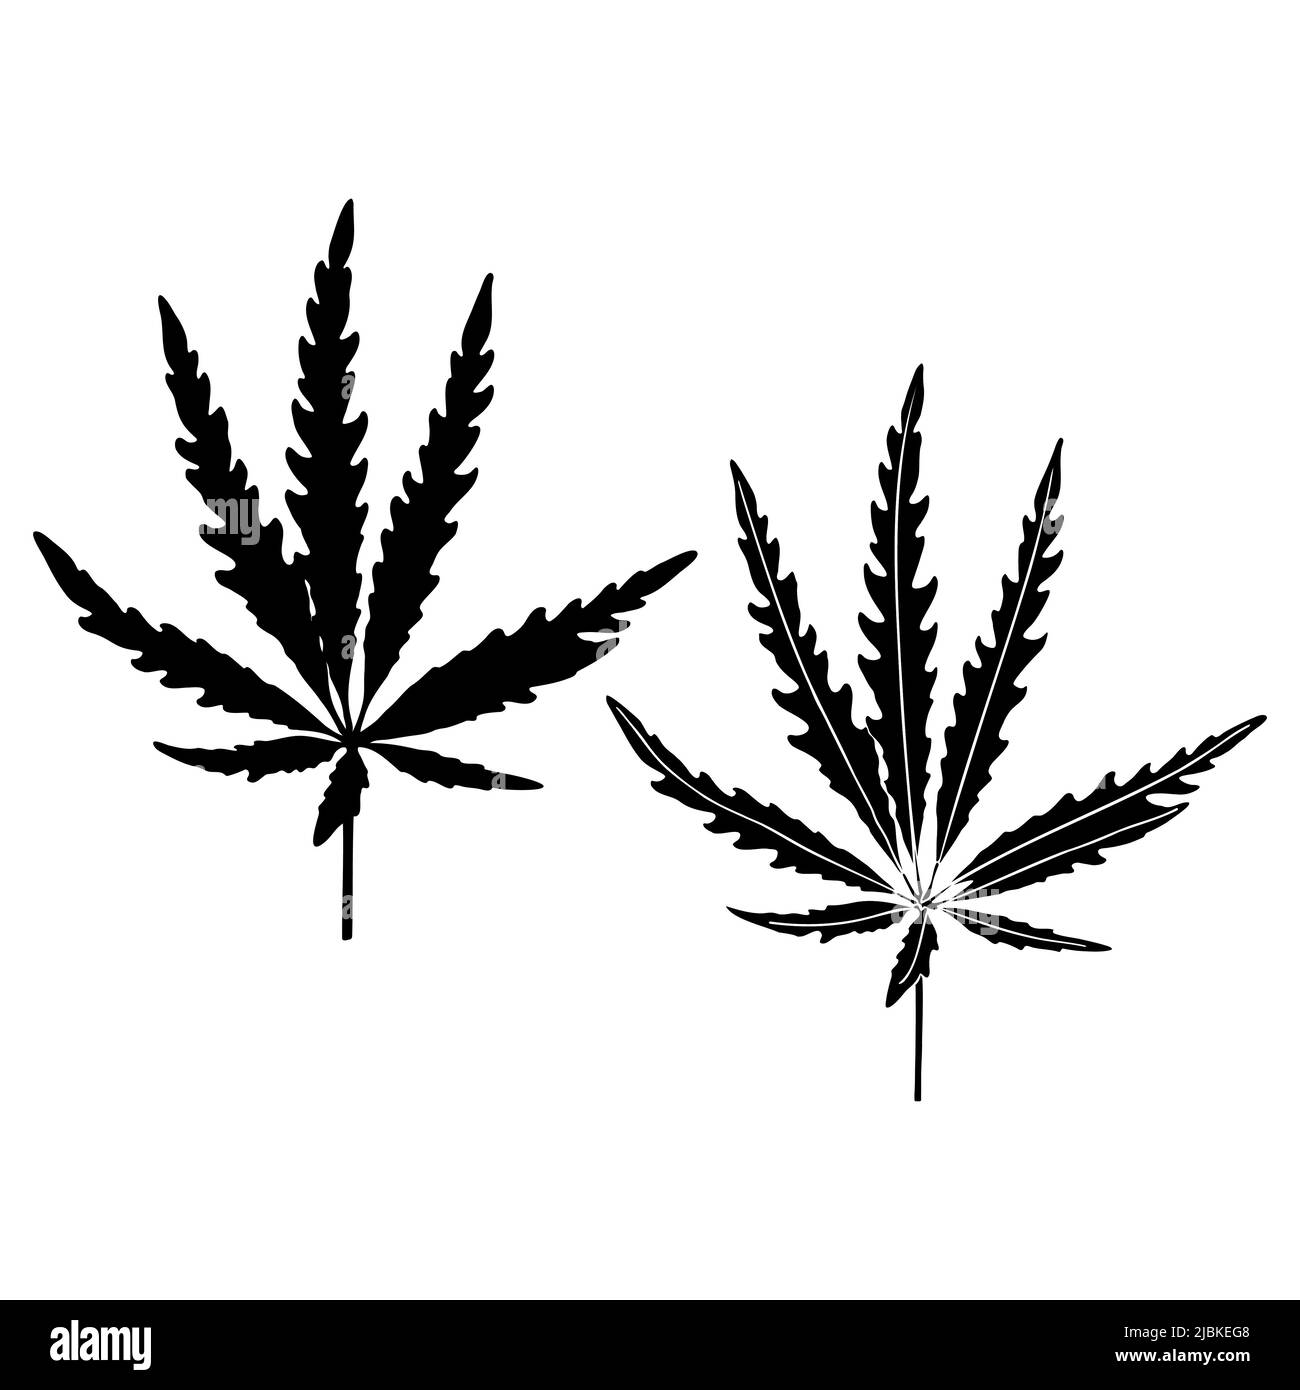 Marijuana o foglia di cannabis silhouette isolato set. Silhouette nera di foglie di marijuana o cannabis a base di erbe su sfondo bianco. Illustrazione vettoriale. Illustrazione Vettoriale